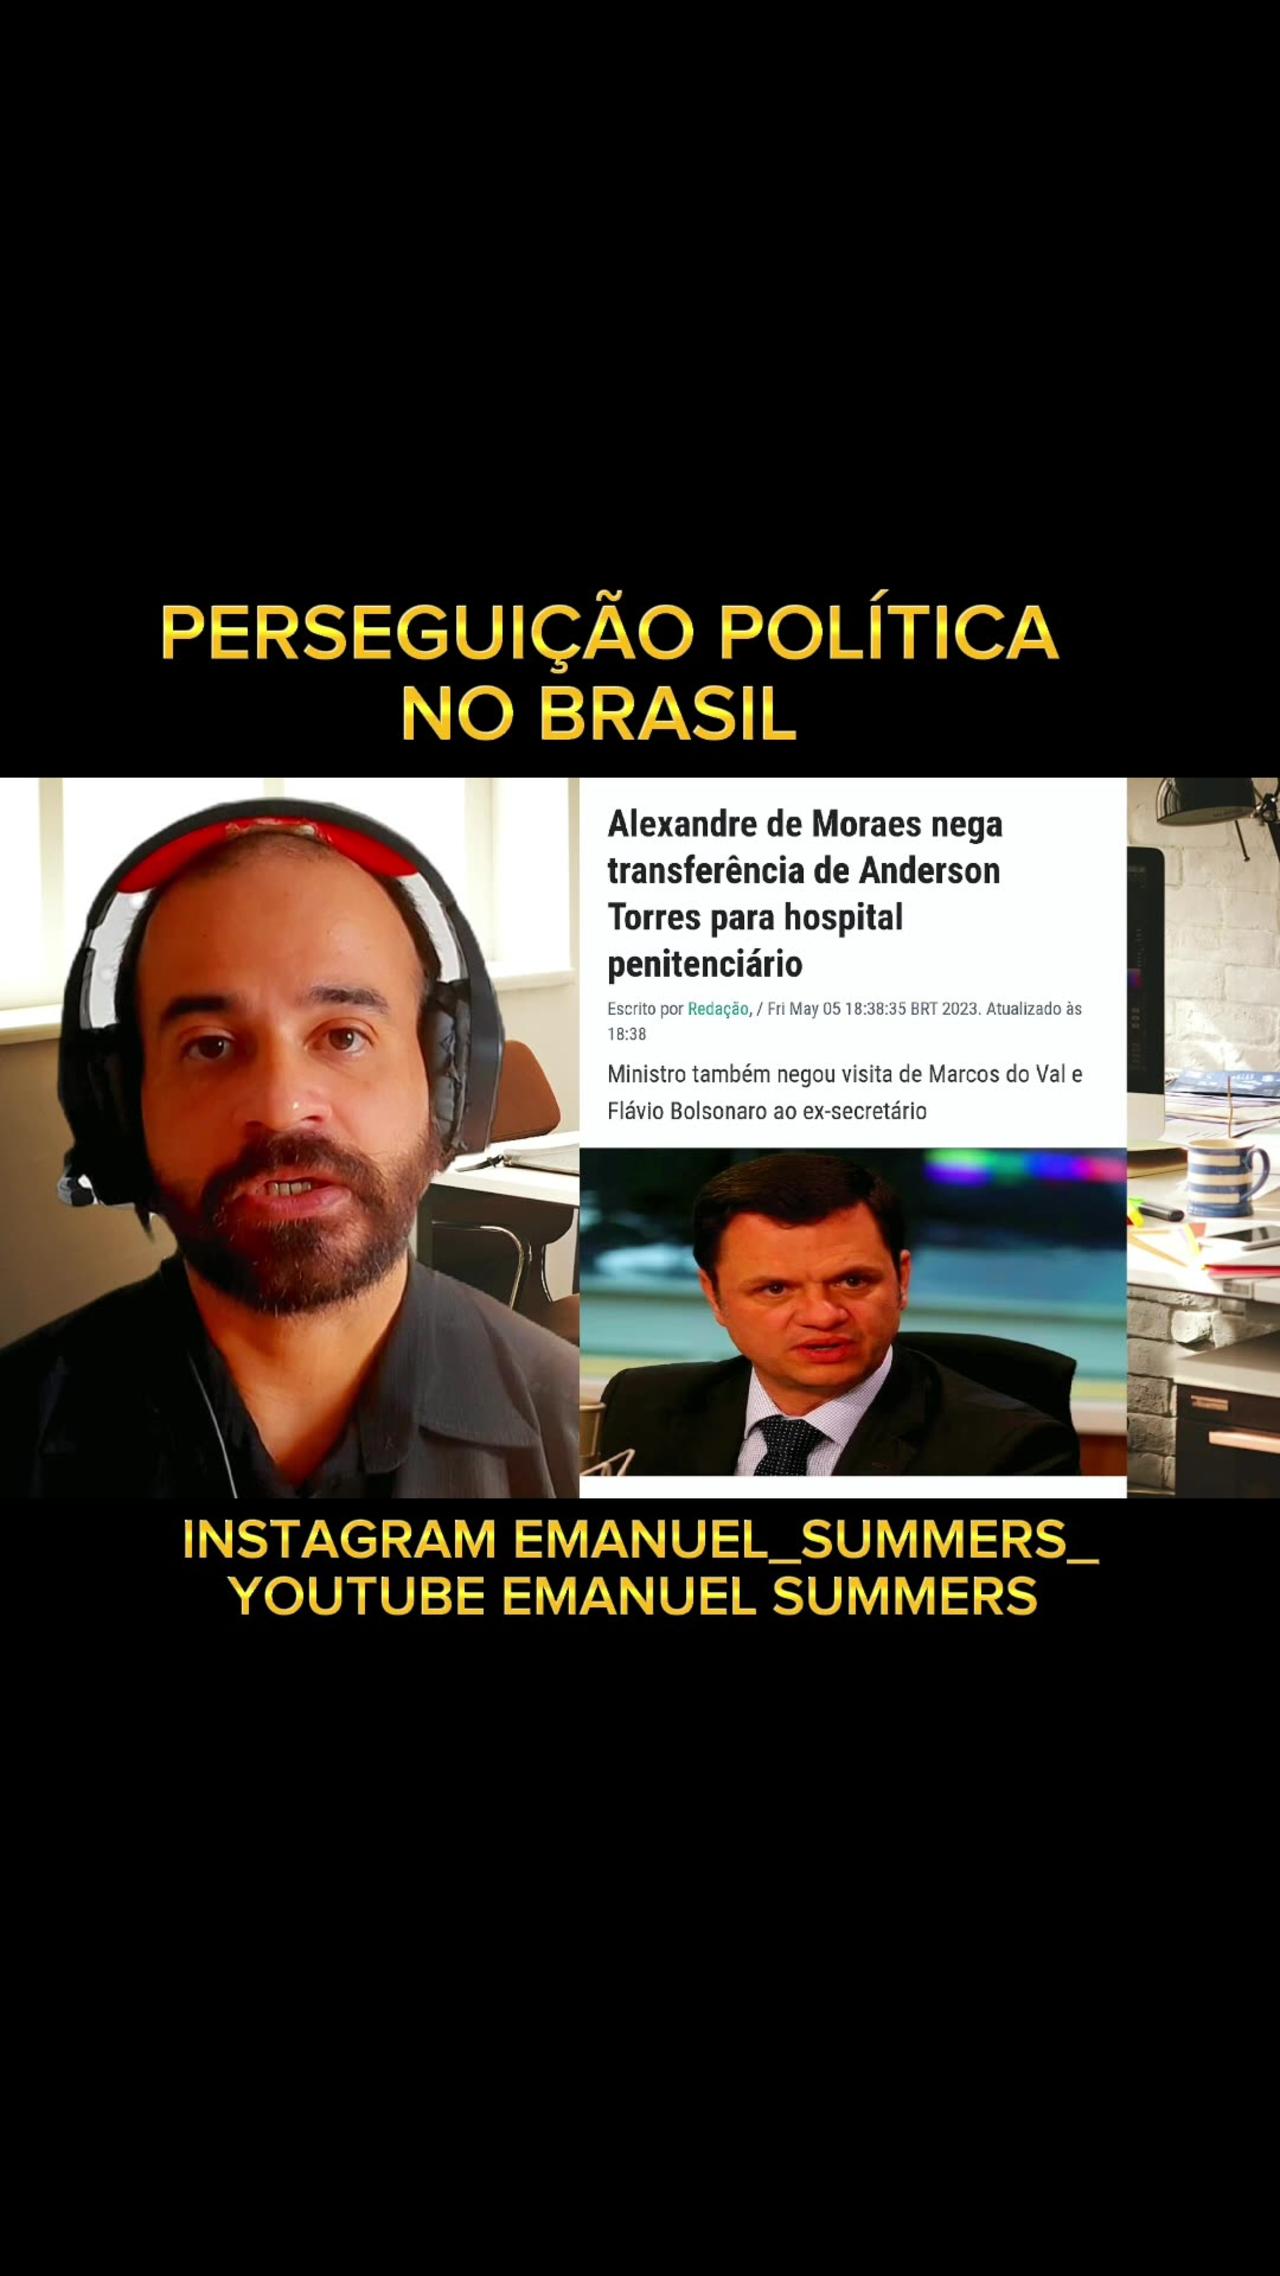 Perseguição política no Brasil